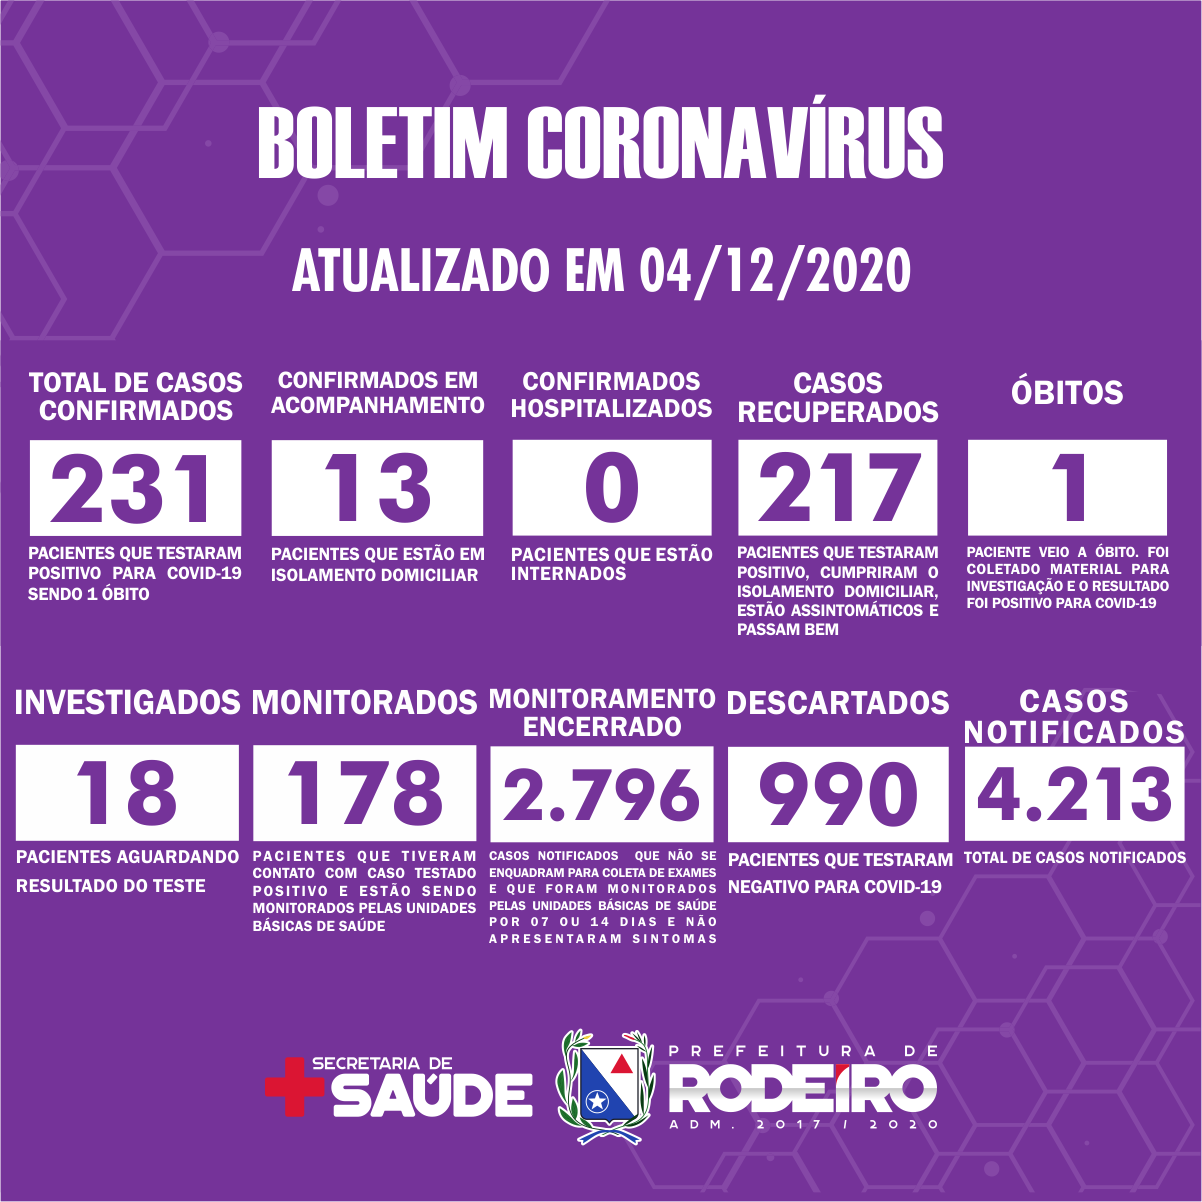 Boletim Epidemiológico do Município de Rodeiro sobre coronavírus, atualizado em 04/12/2020